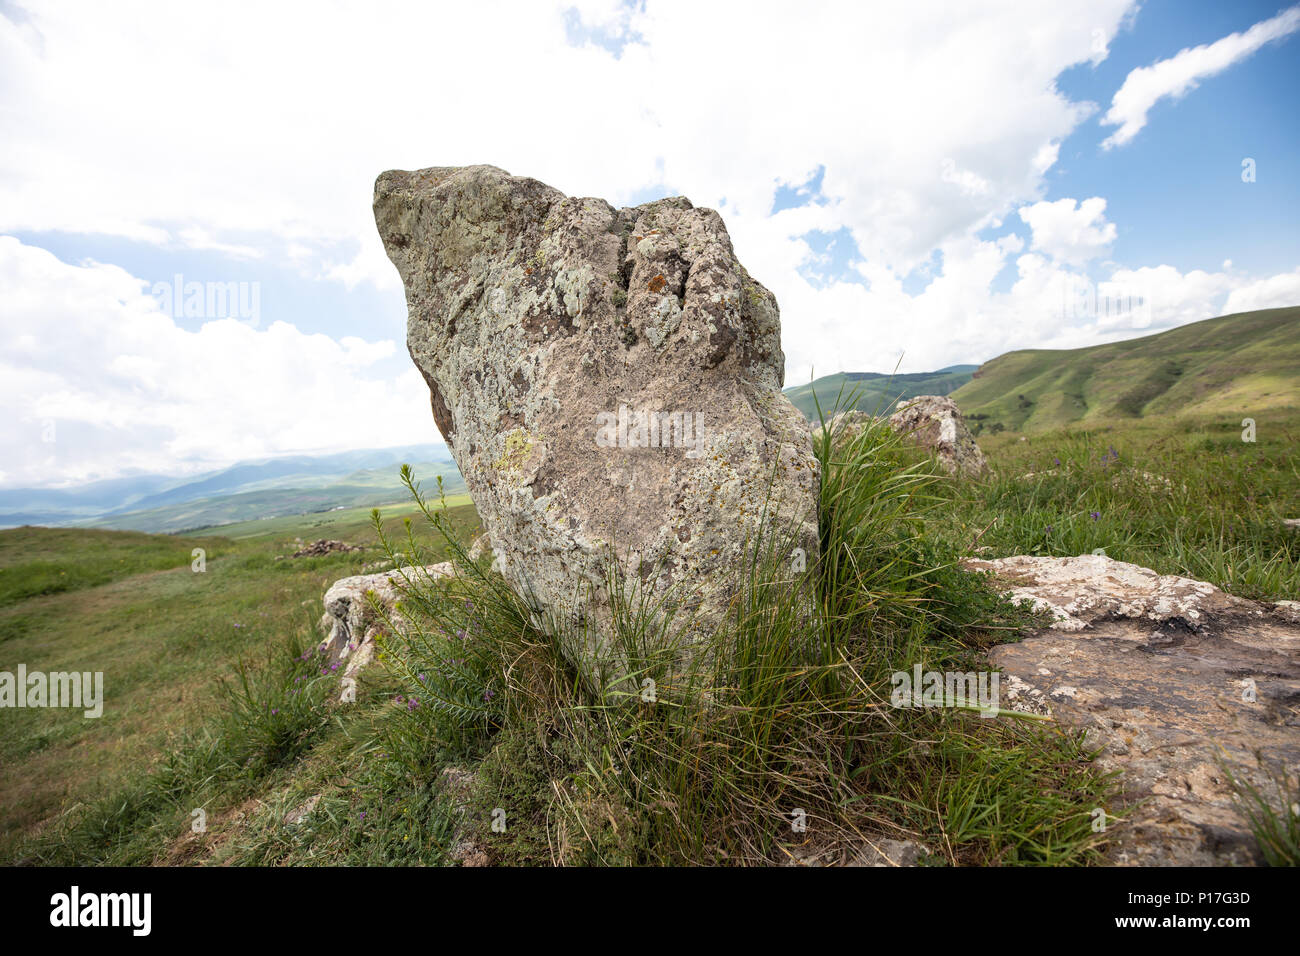 Formations en pierre ancienne Stonehenge Arménien : Karahunj un jour d'été. Sisian, Arménie. Banque D'Images